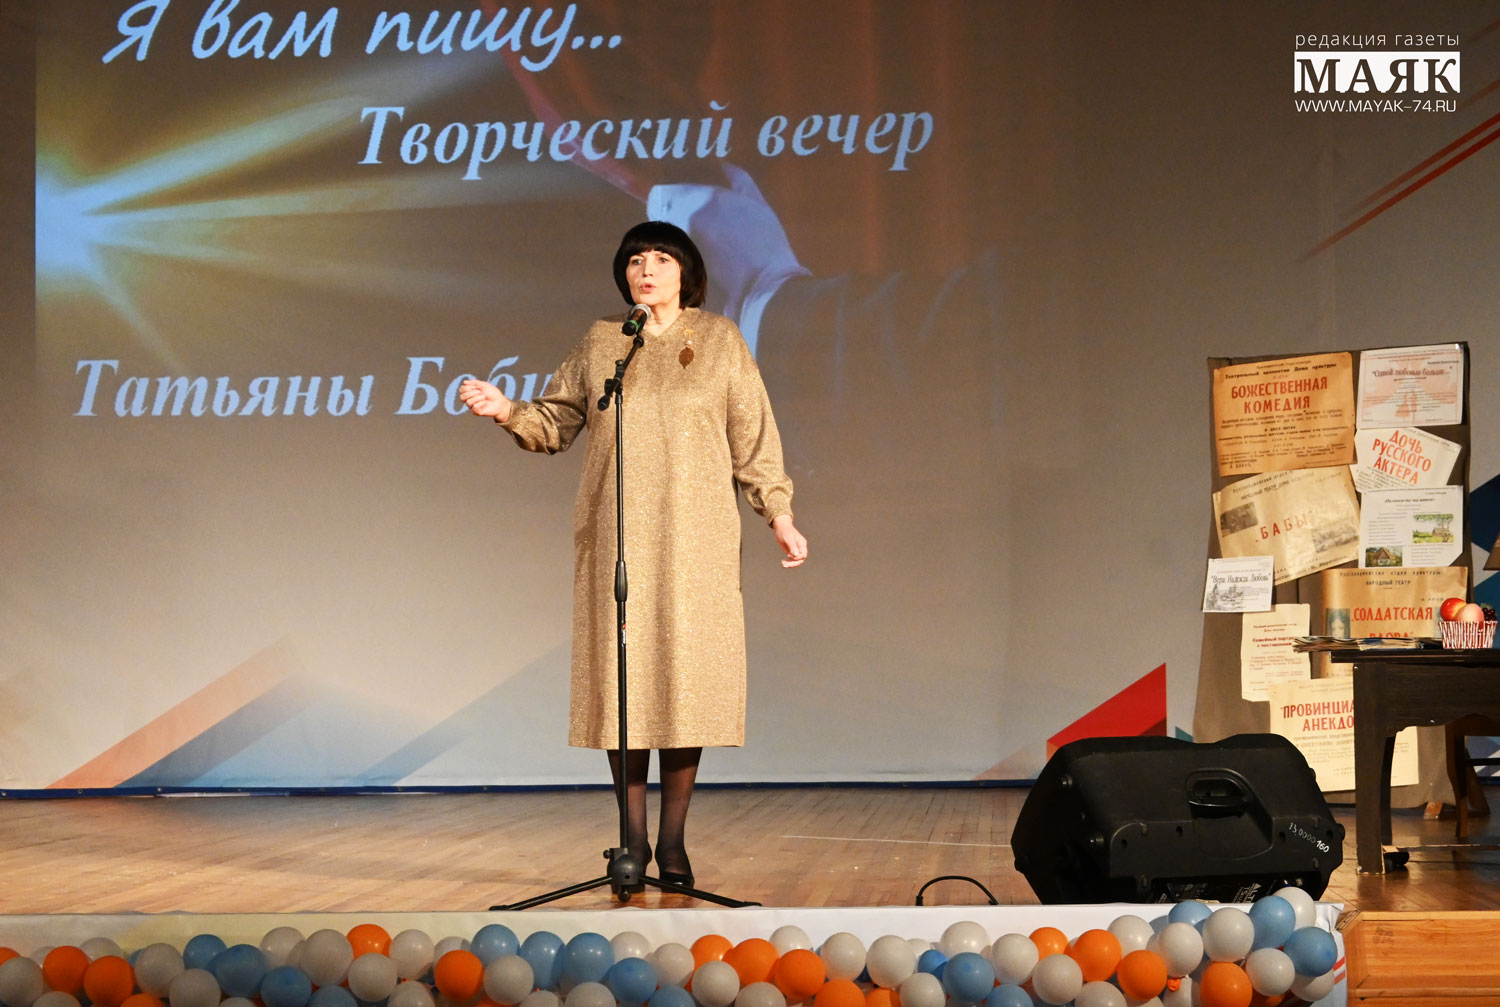 Вечер, посвященный актрисе народного театра, провели в Красноармейском районе